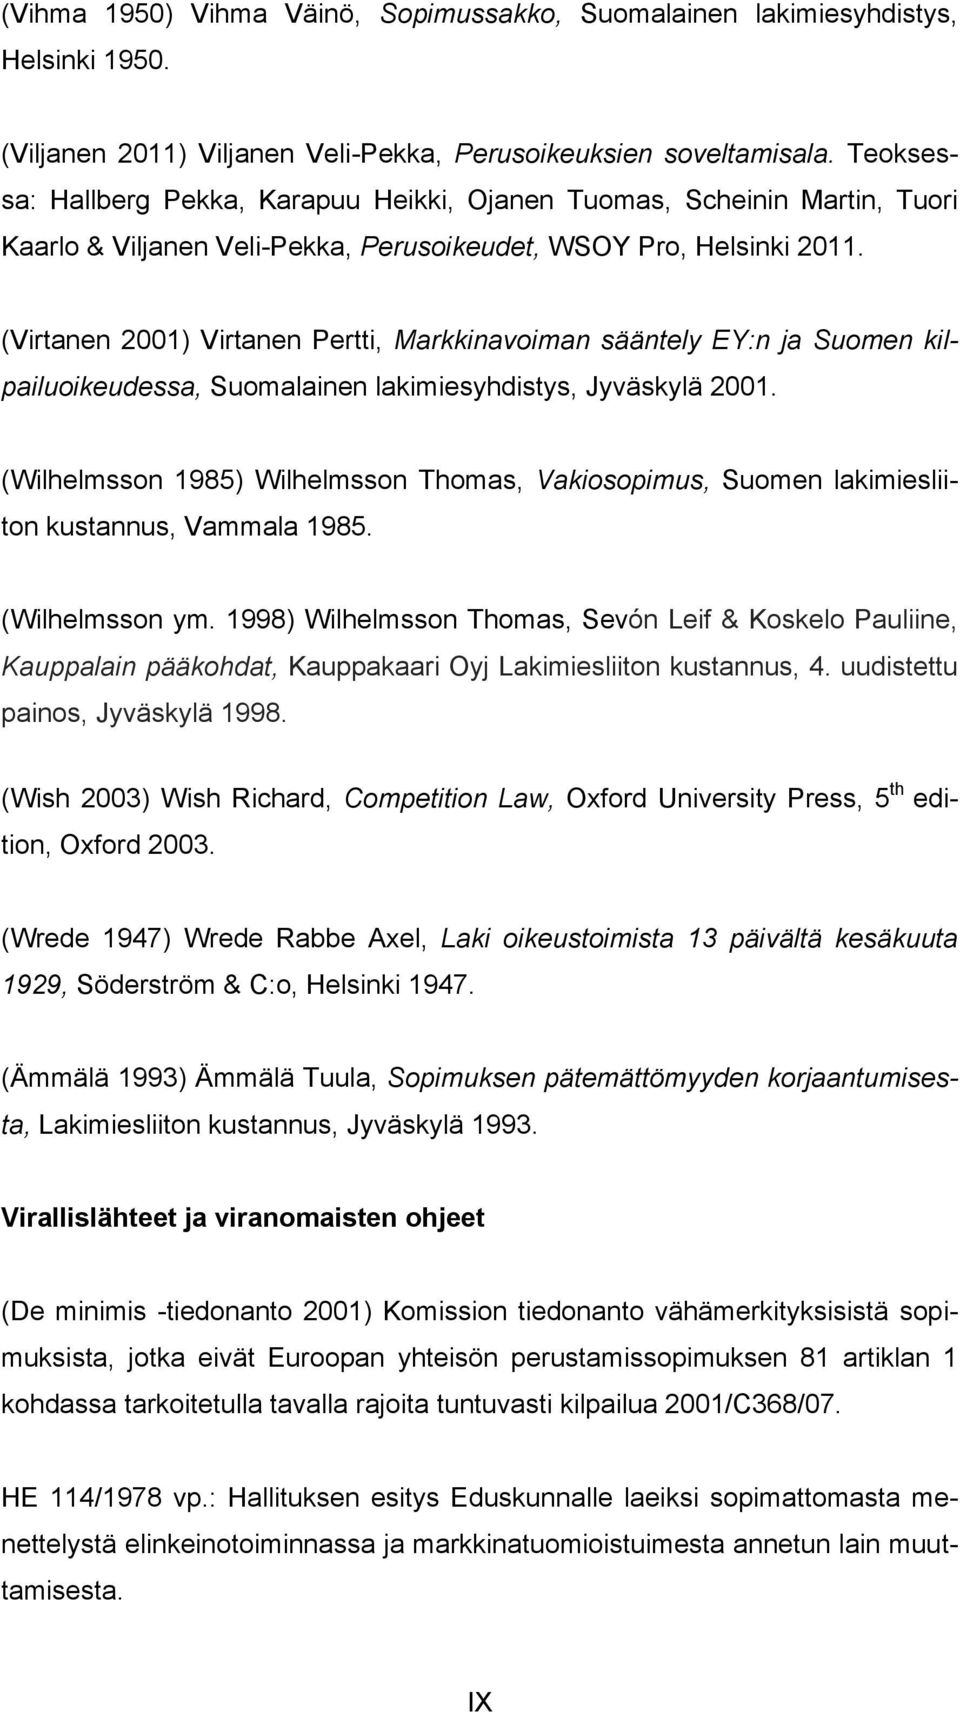 (Virtanen 2001) Virtanen Pertti, Markkinavoiman sääntely EY:n ja Suomen kilpailuoikeudessa, Suomalainen lakimiesyhdistys, Jyväskylä 2001.